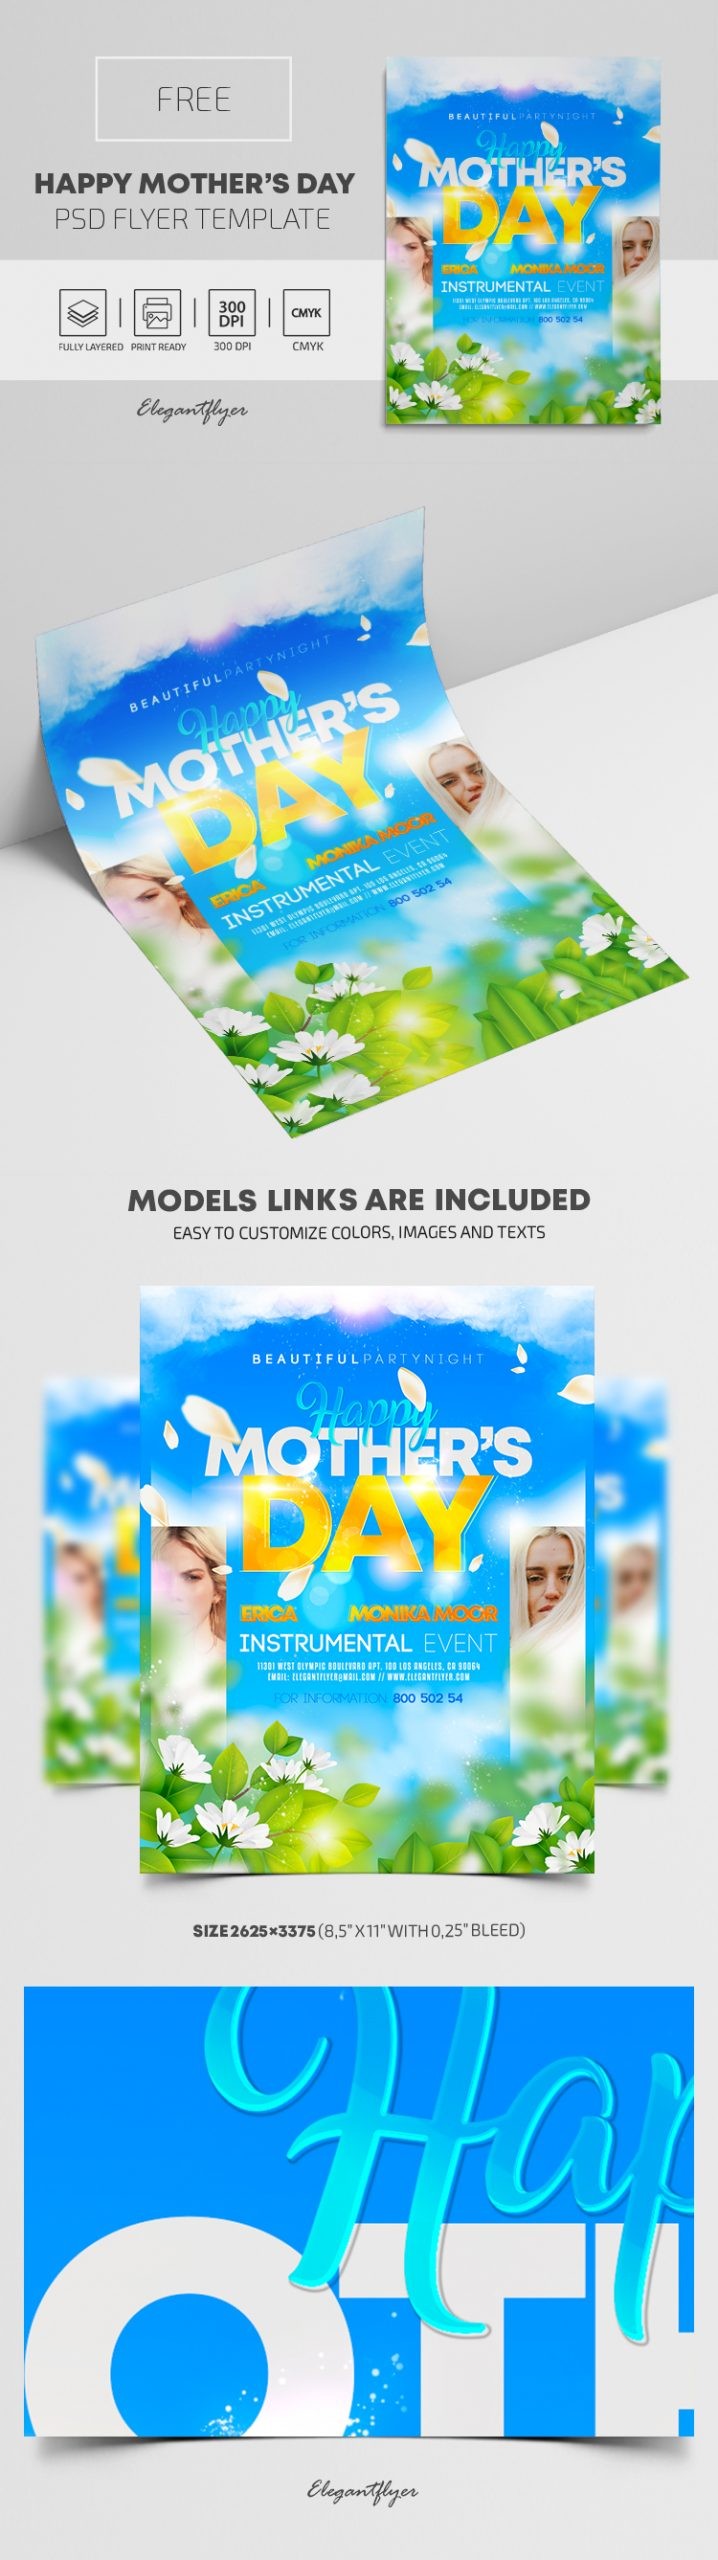 Happy Mother's Day Flyer by ElegantFlyer